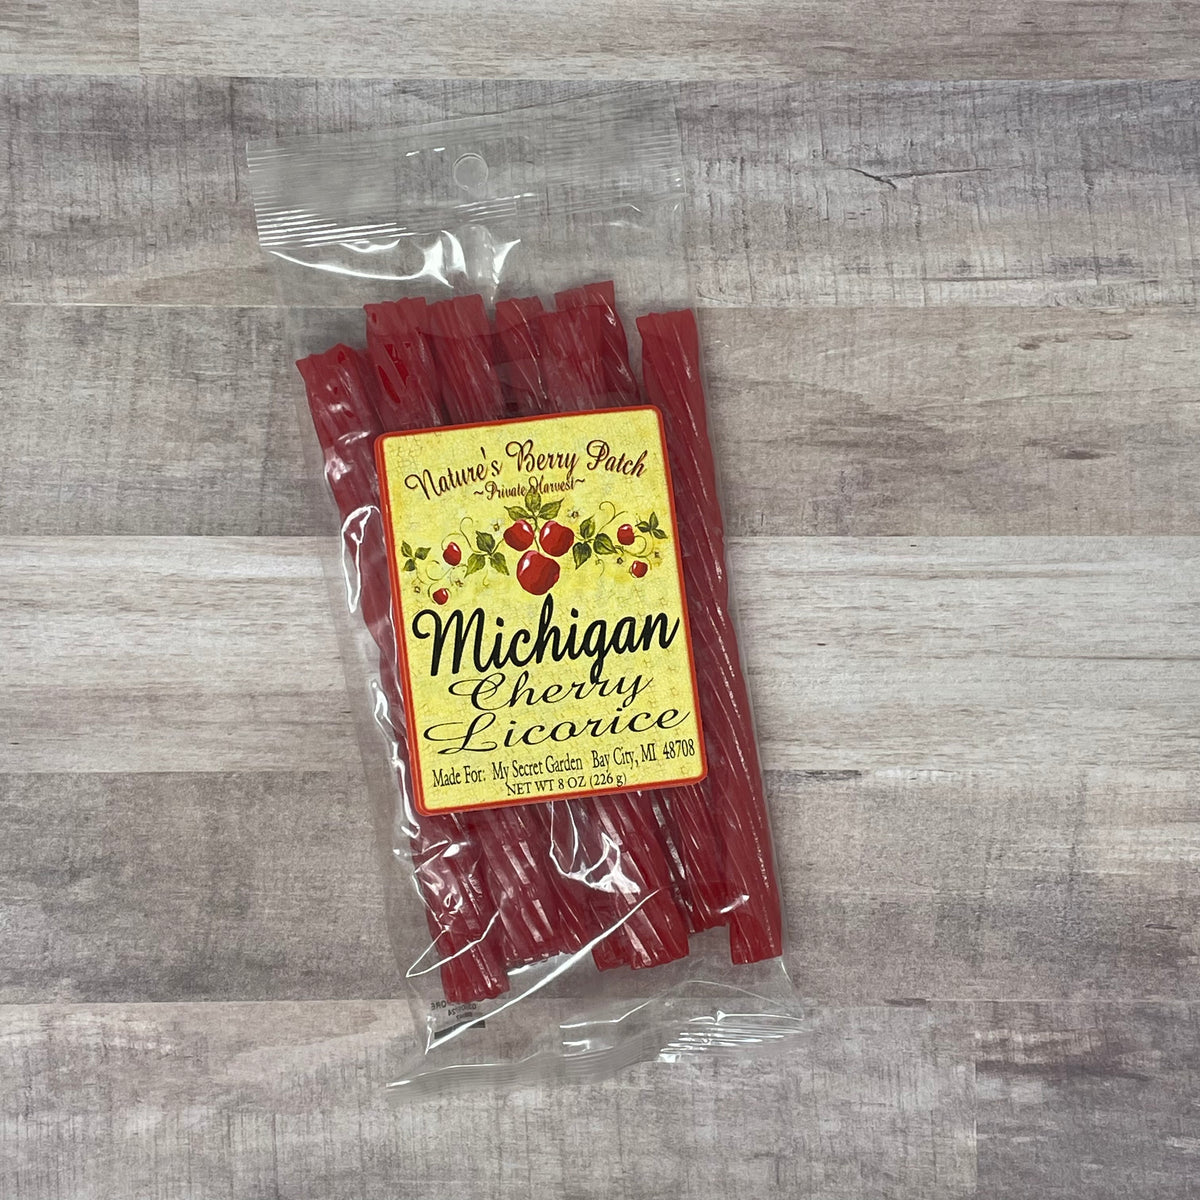 8oz. Michigan Cherry Licorice